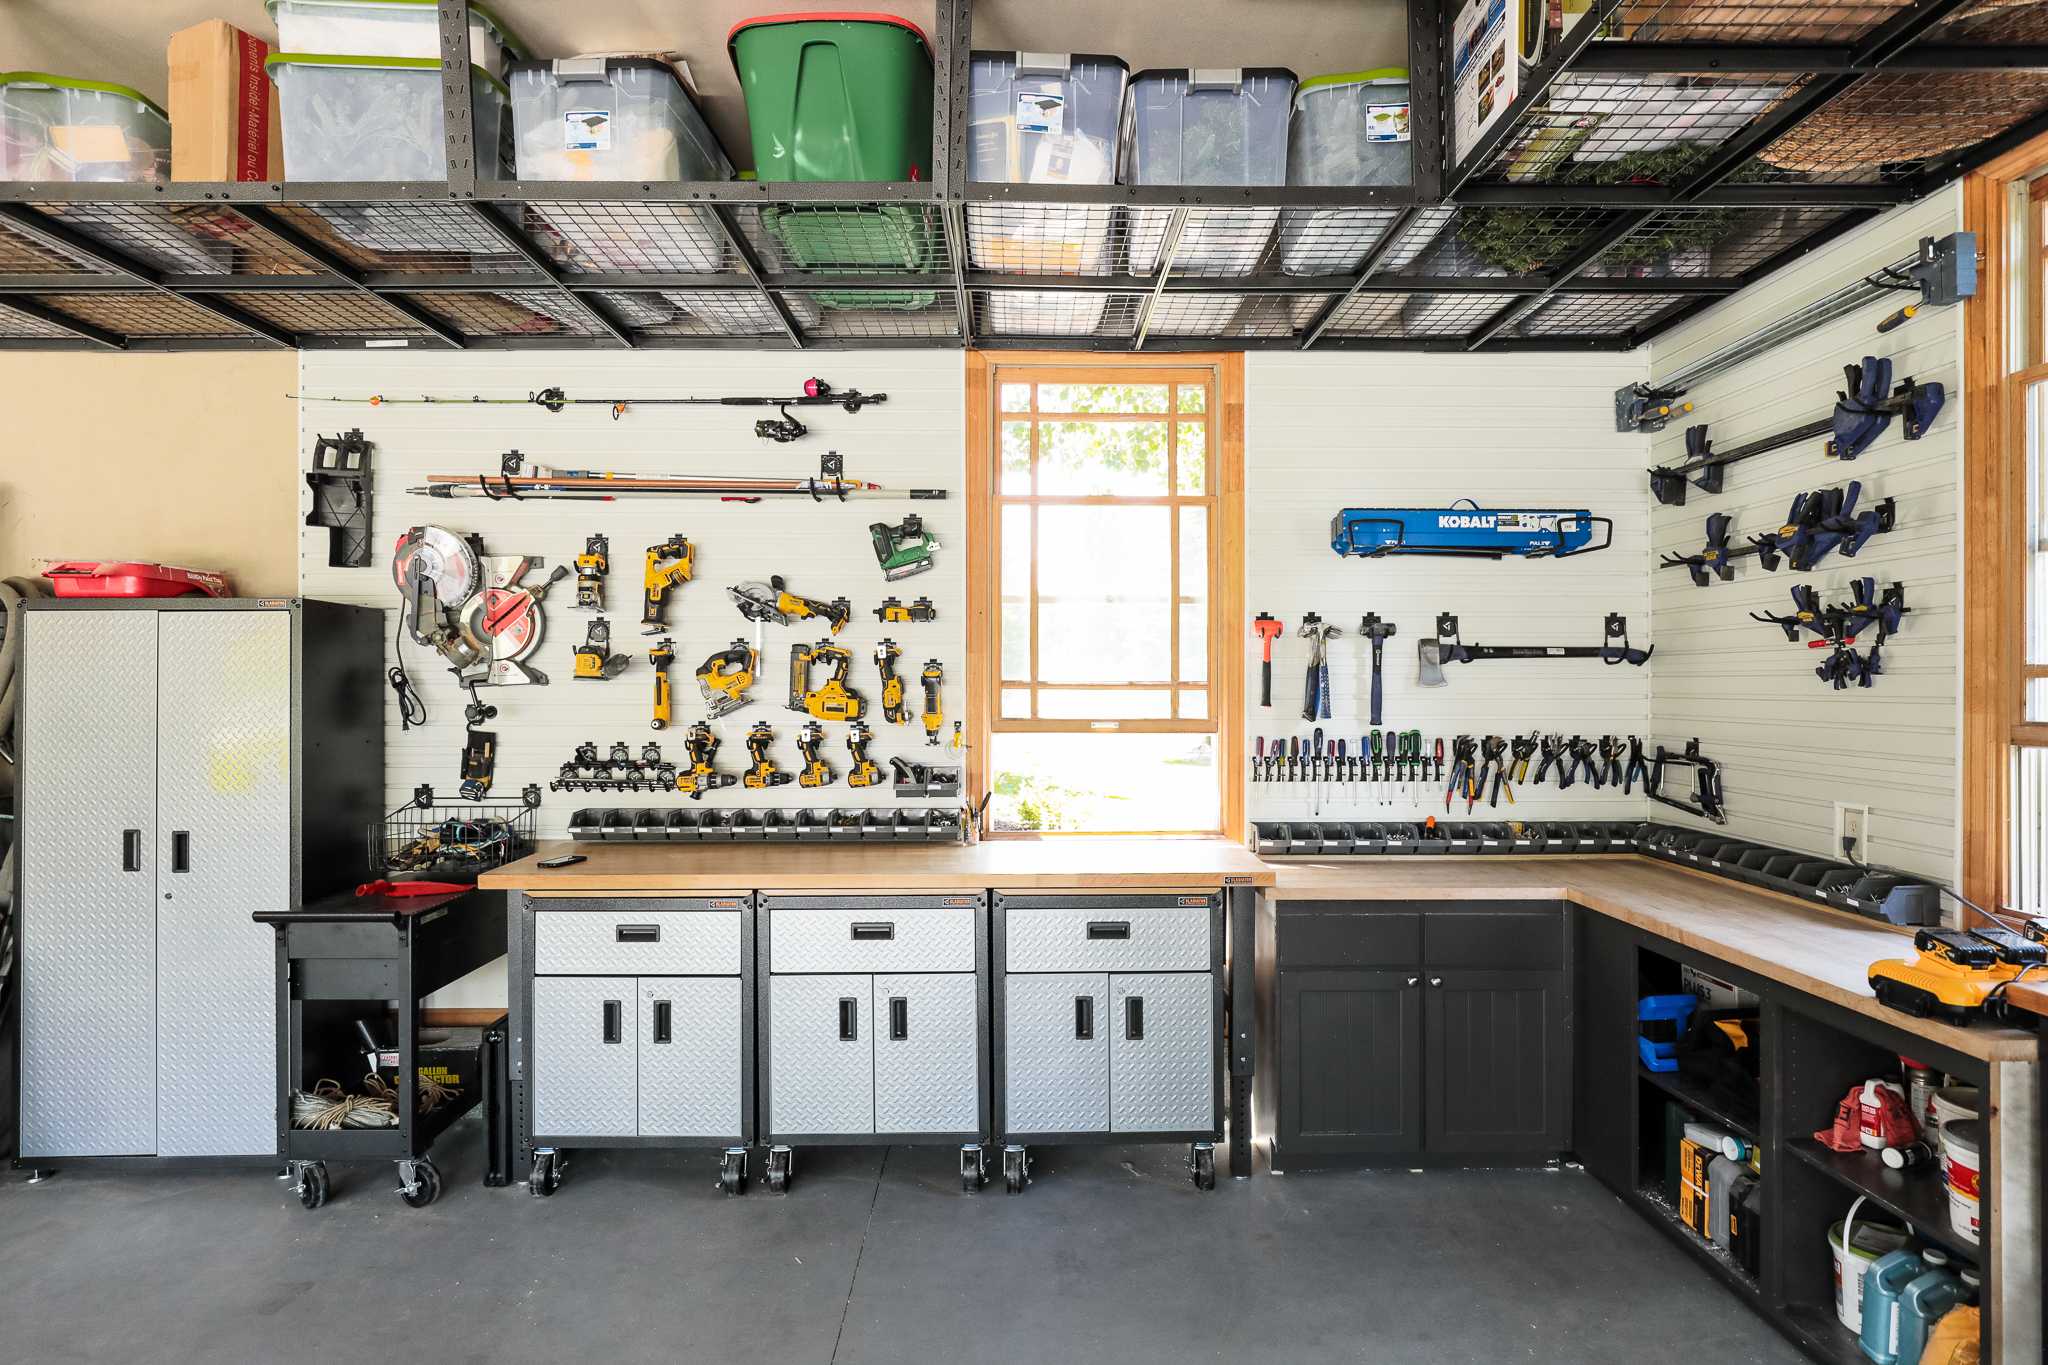 Самоделки для гаража своими руками в домашних условия: самое интересное, пошаговые инструкции, видео уроки